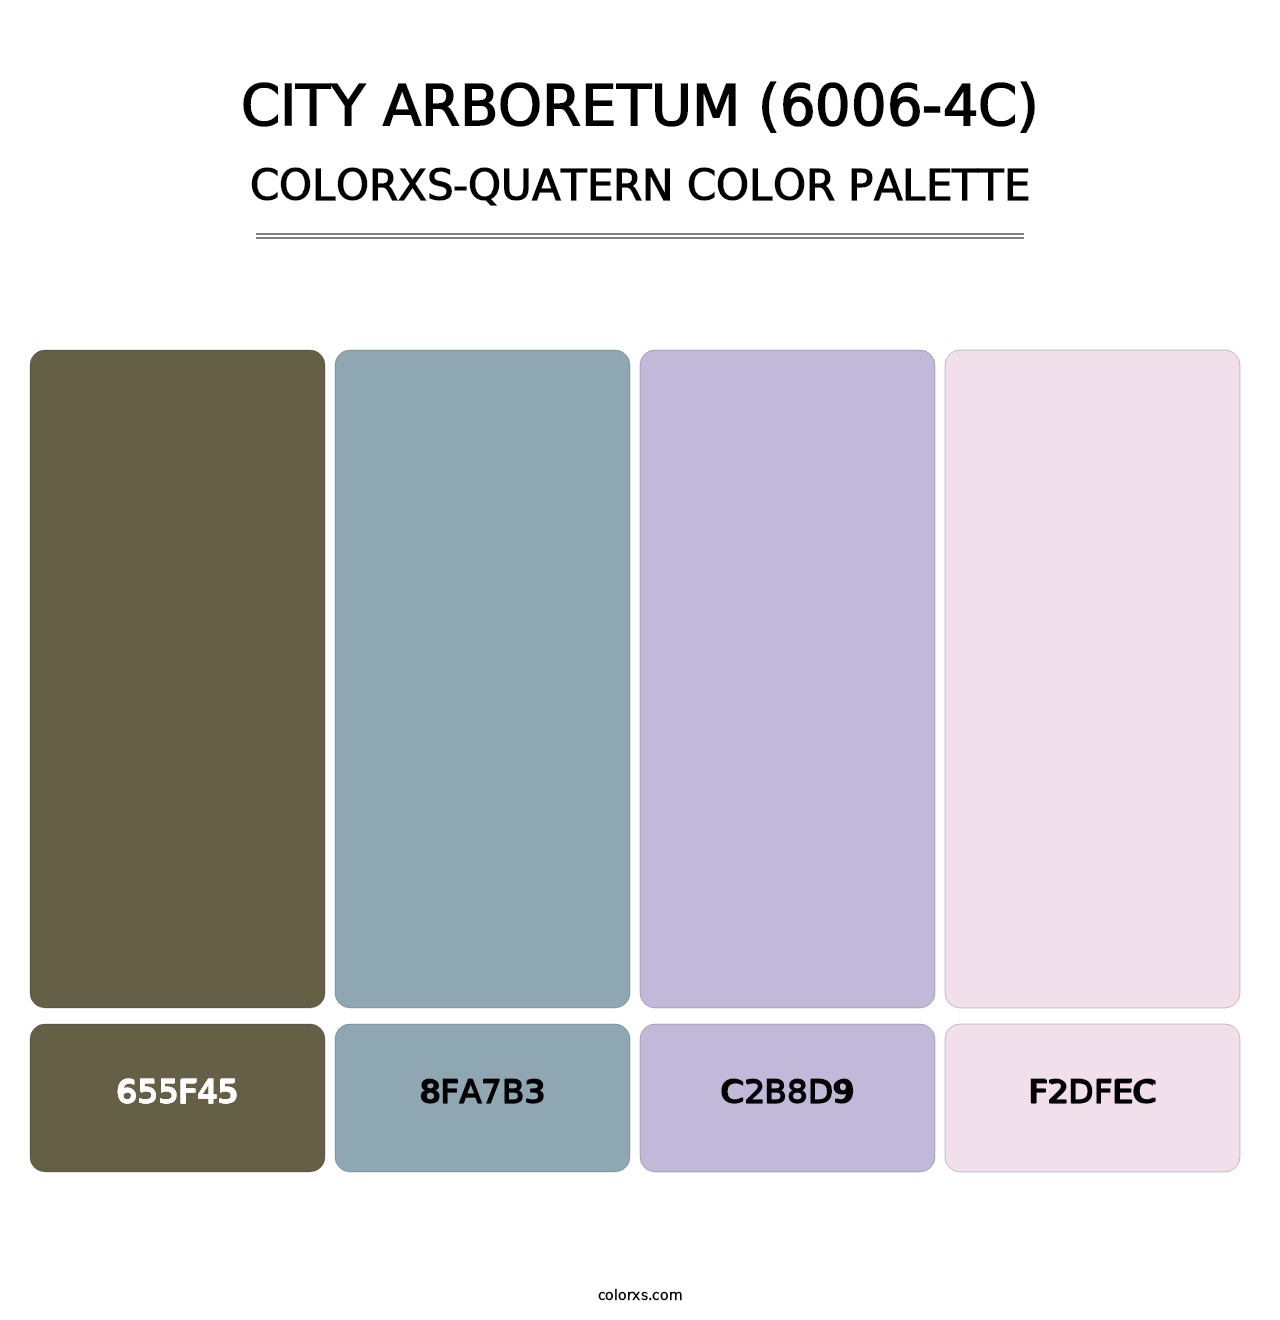 City Arboretum (6006-4C) - Colorxs Quatern Palette